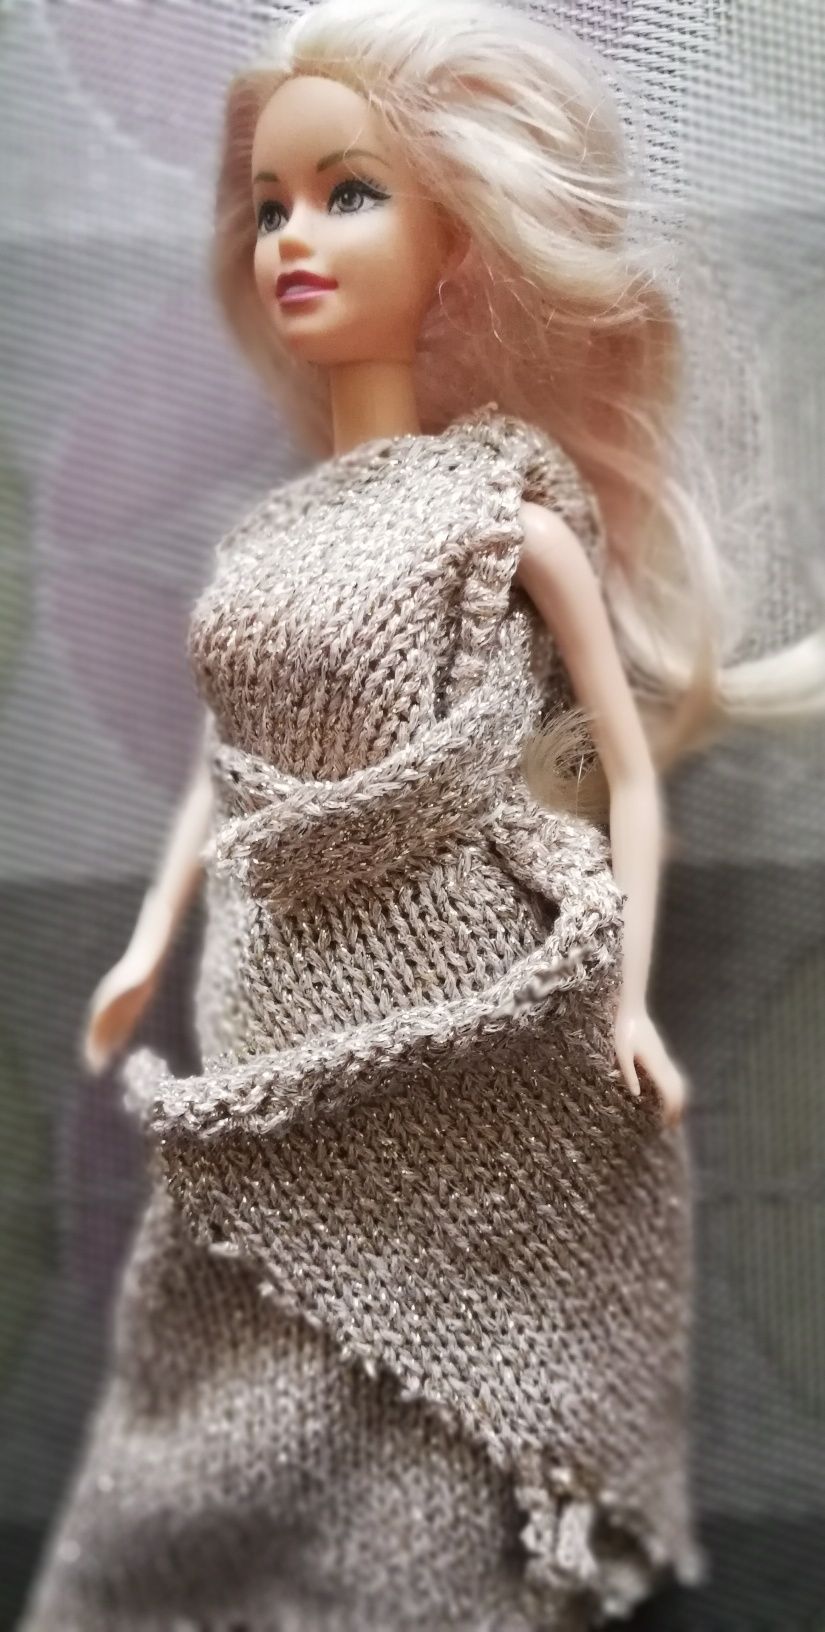 Laleczka Barbie w pięknej sukni